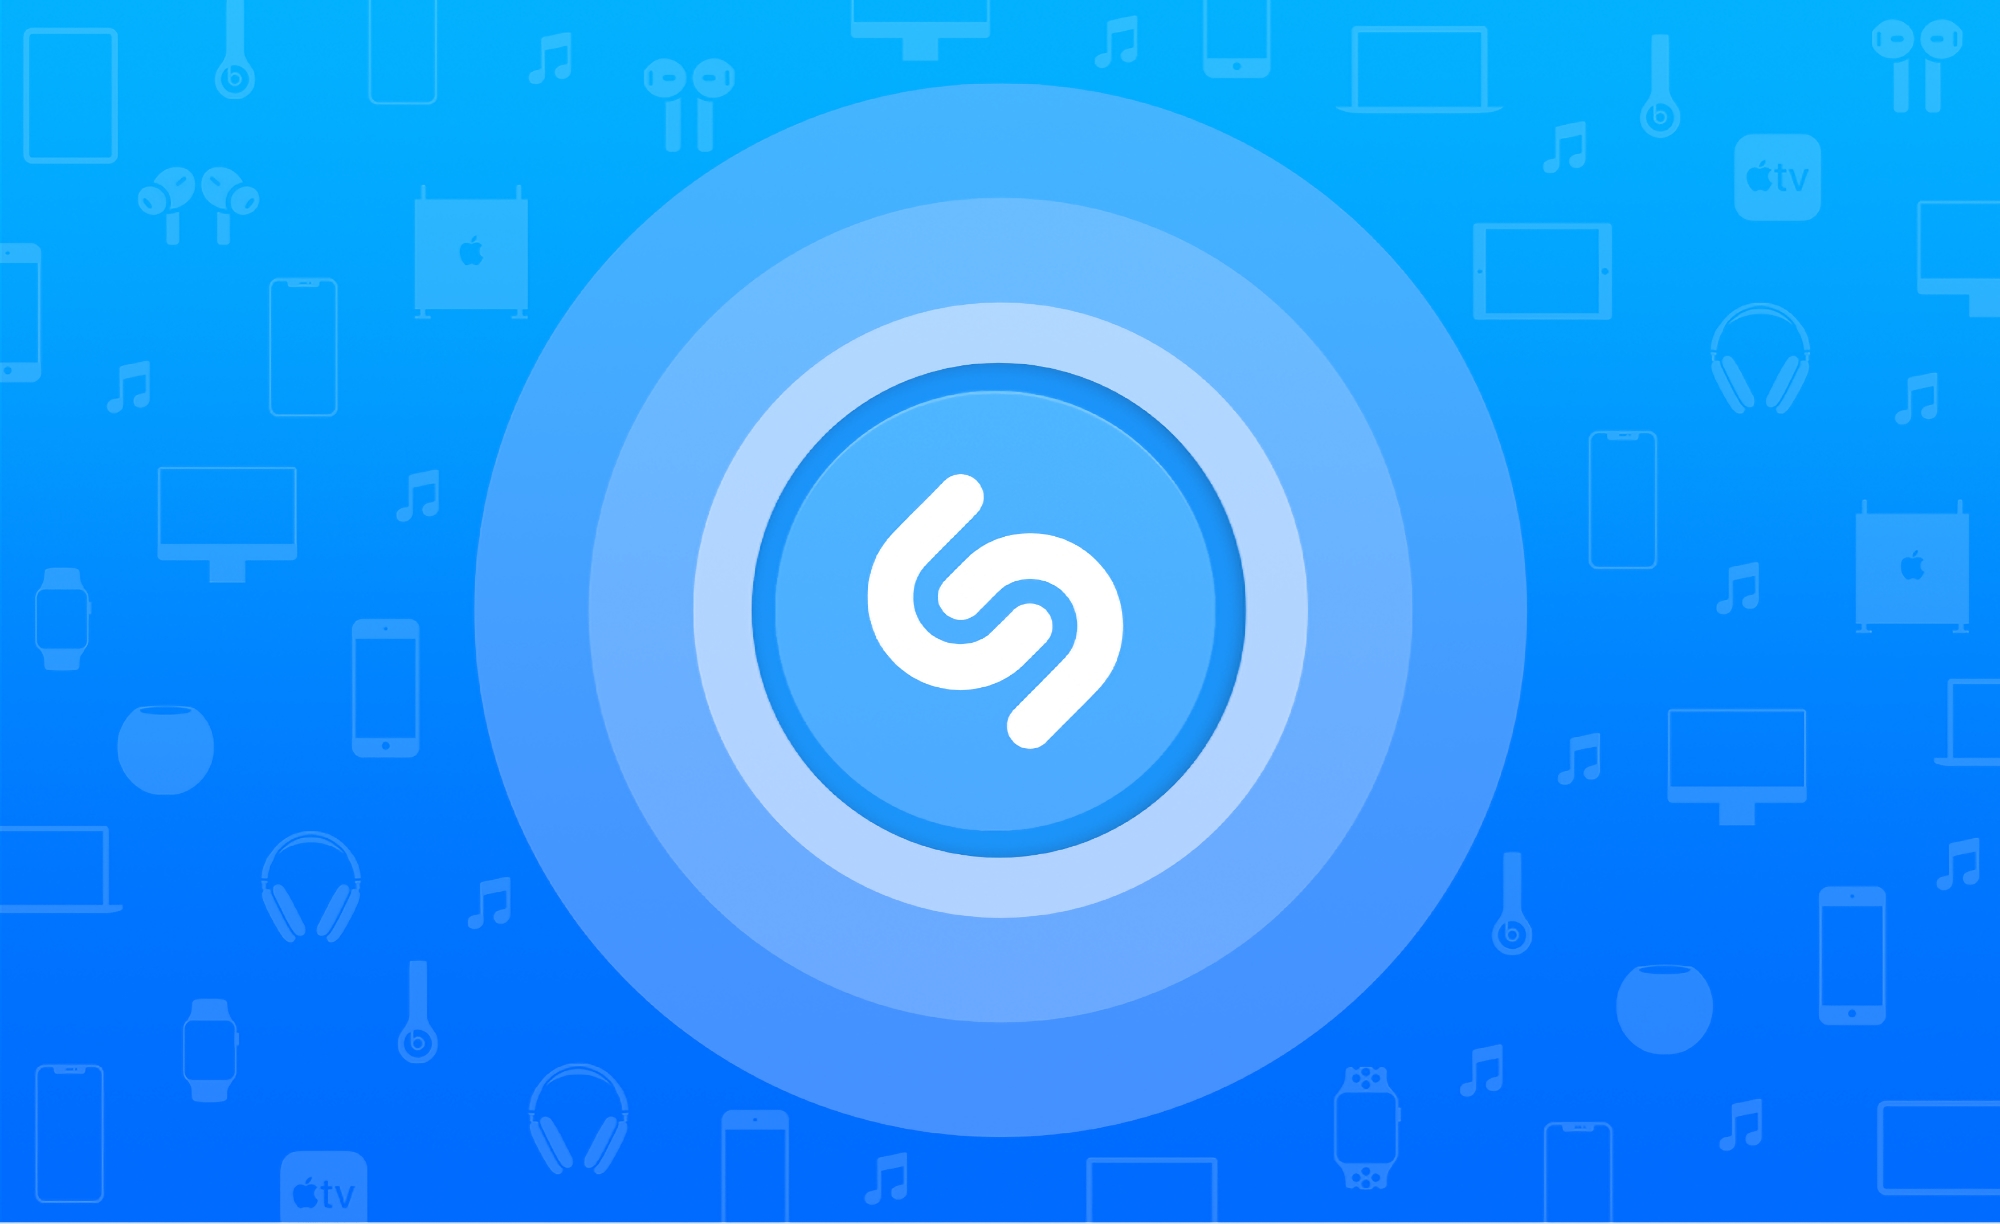 iPhone- en iPad-gebruikers kunnen Shazam nu gebruiken om nummers in apps te identificeren zonder hun koptelefoon af te zetten